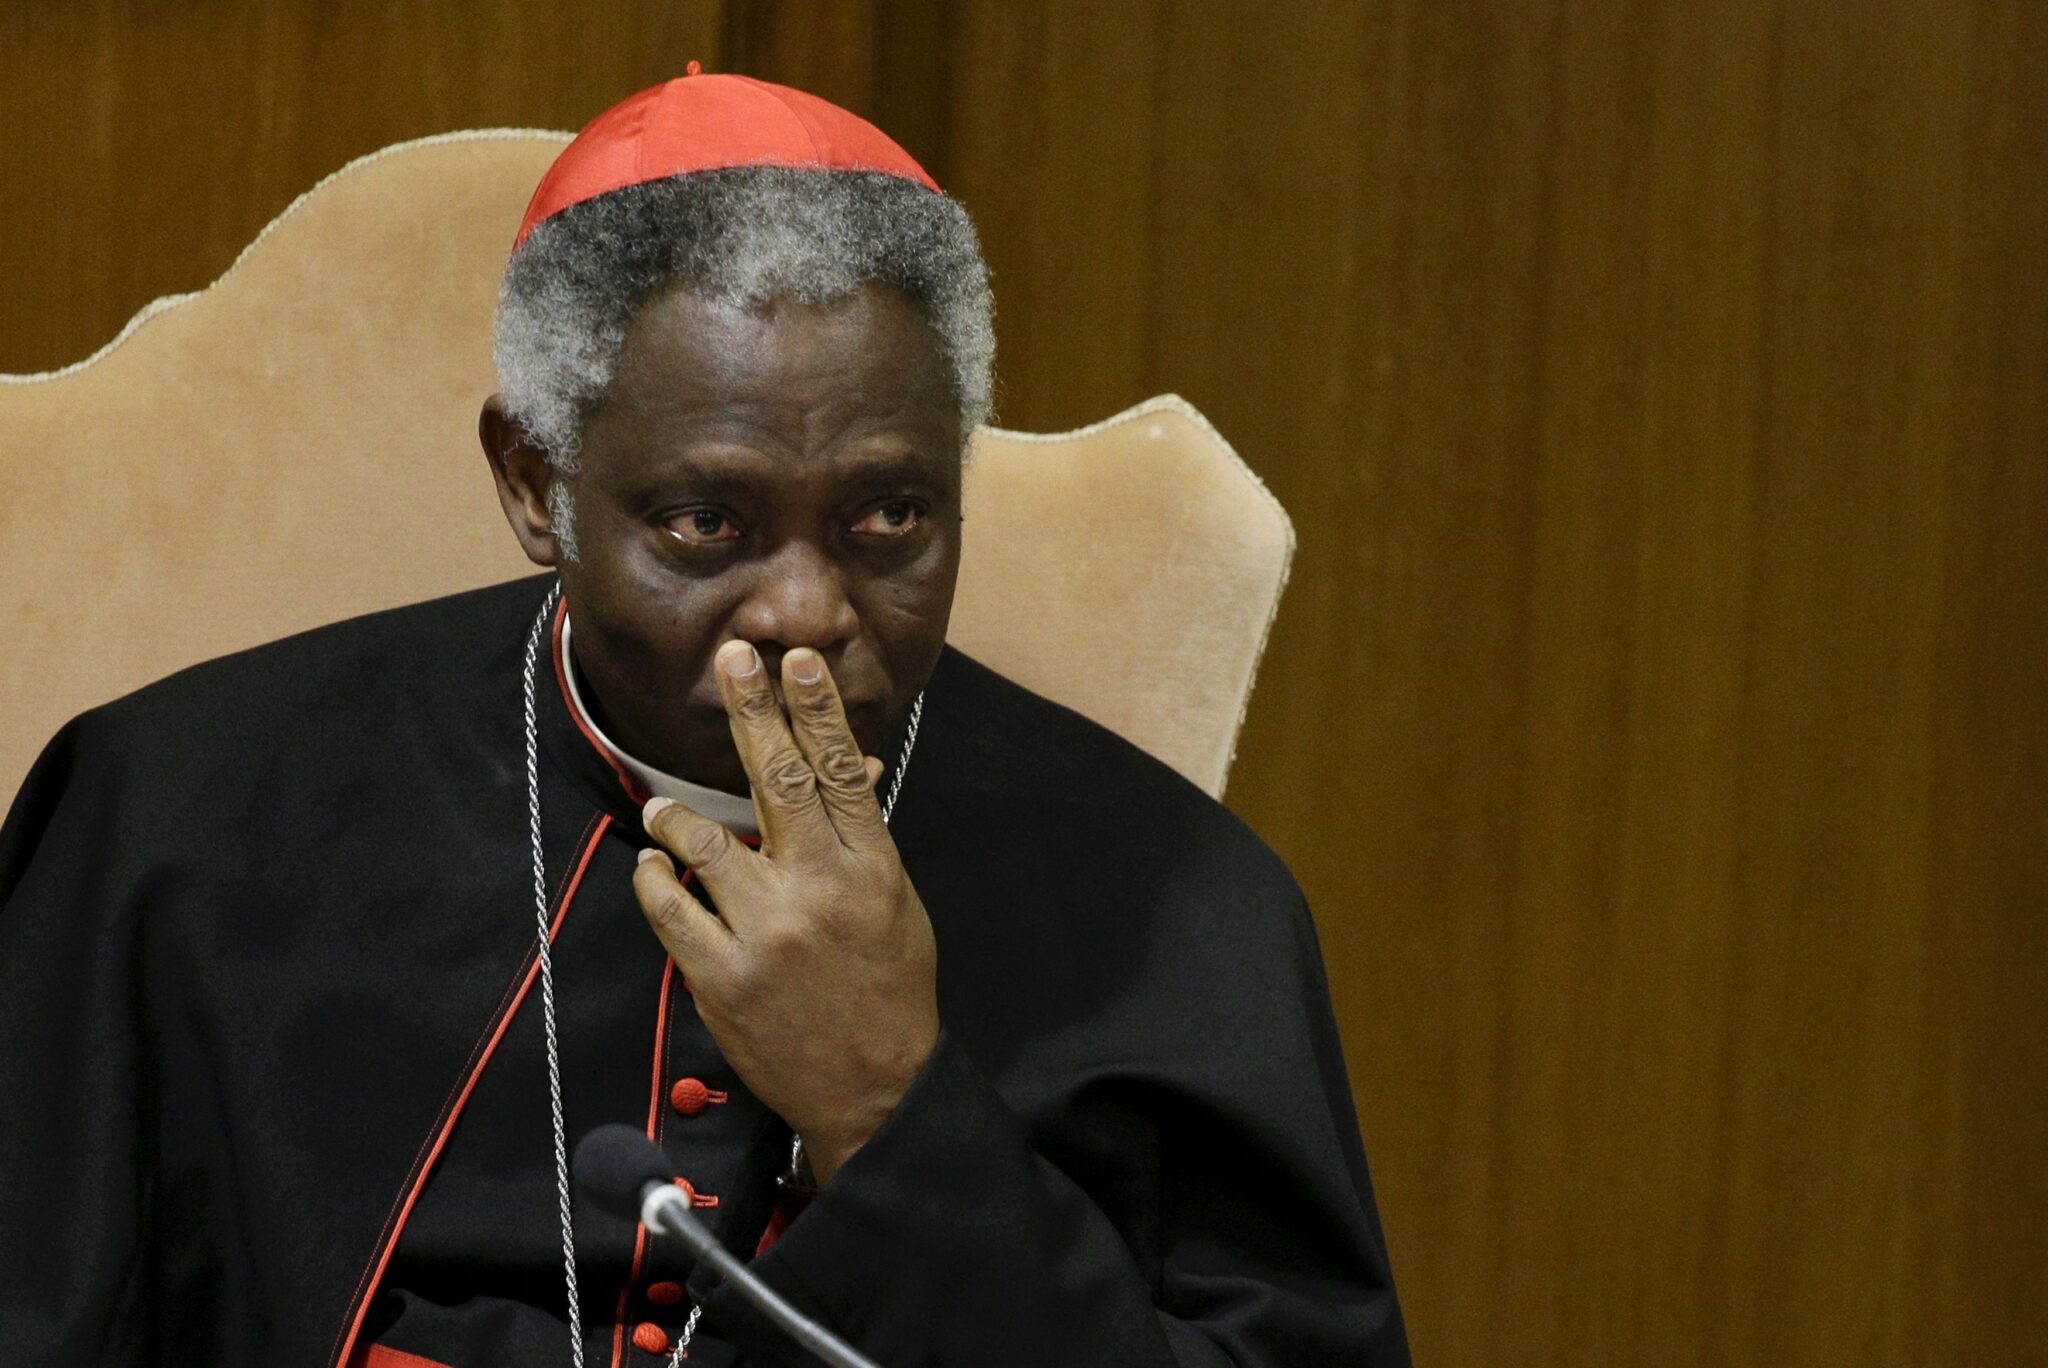 Cardenal africano de alto rango en el Vaticano ofrece abruptamente su renuncia: fuentes FOTO Reuters